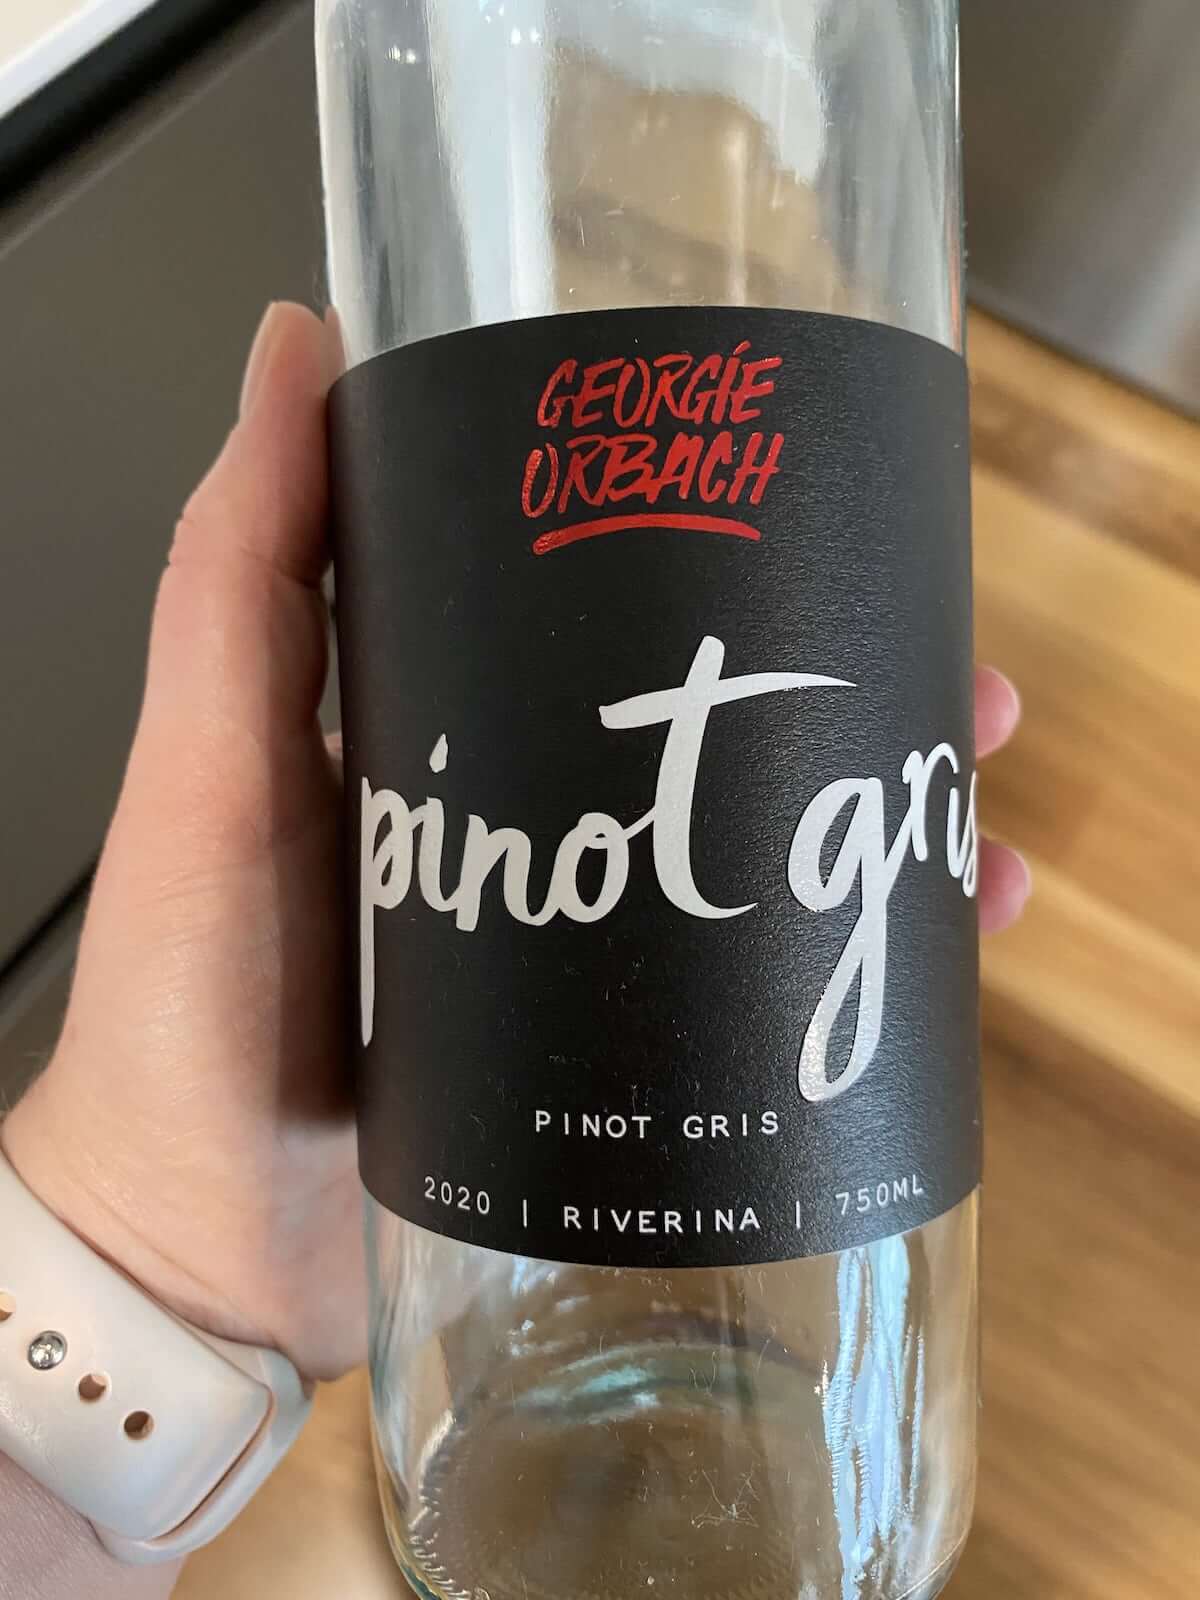 Georgie Orbach 2020 Pinot Gris